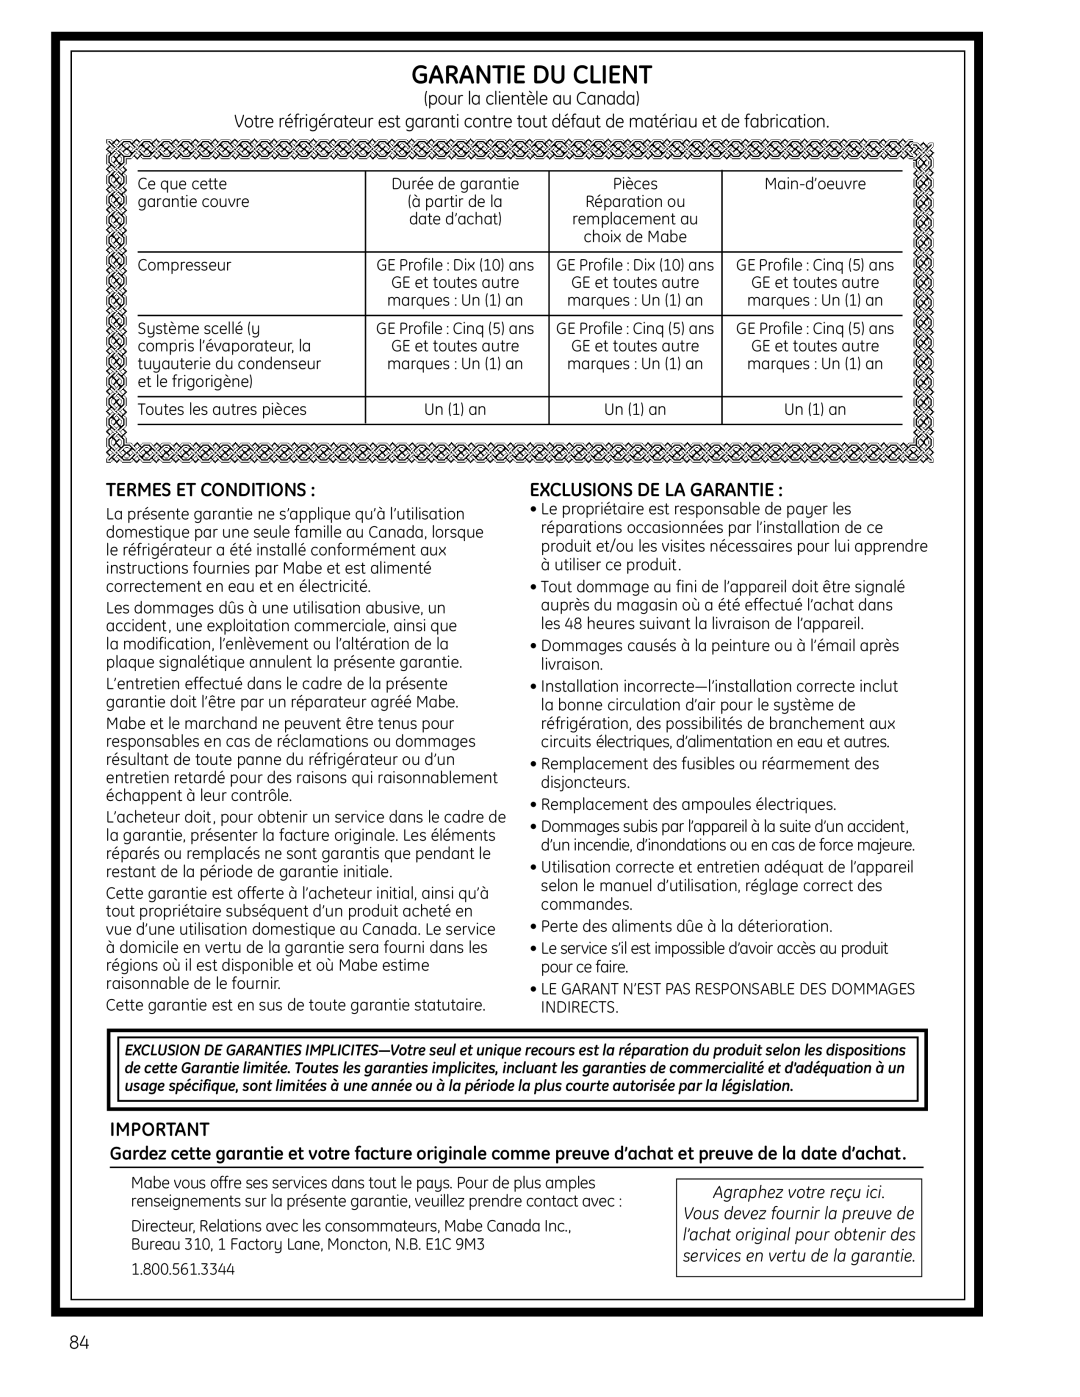 GE 225D1804P001 Garantie Du Client, Termes Et Conditions, Exclusions De La Garantie, pour la clientèle au Canada 